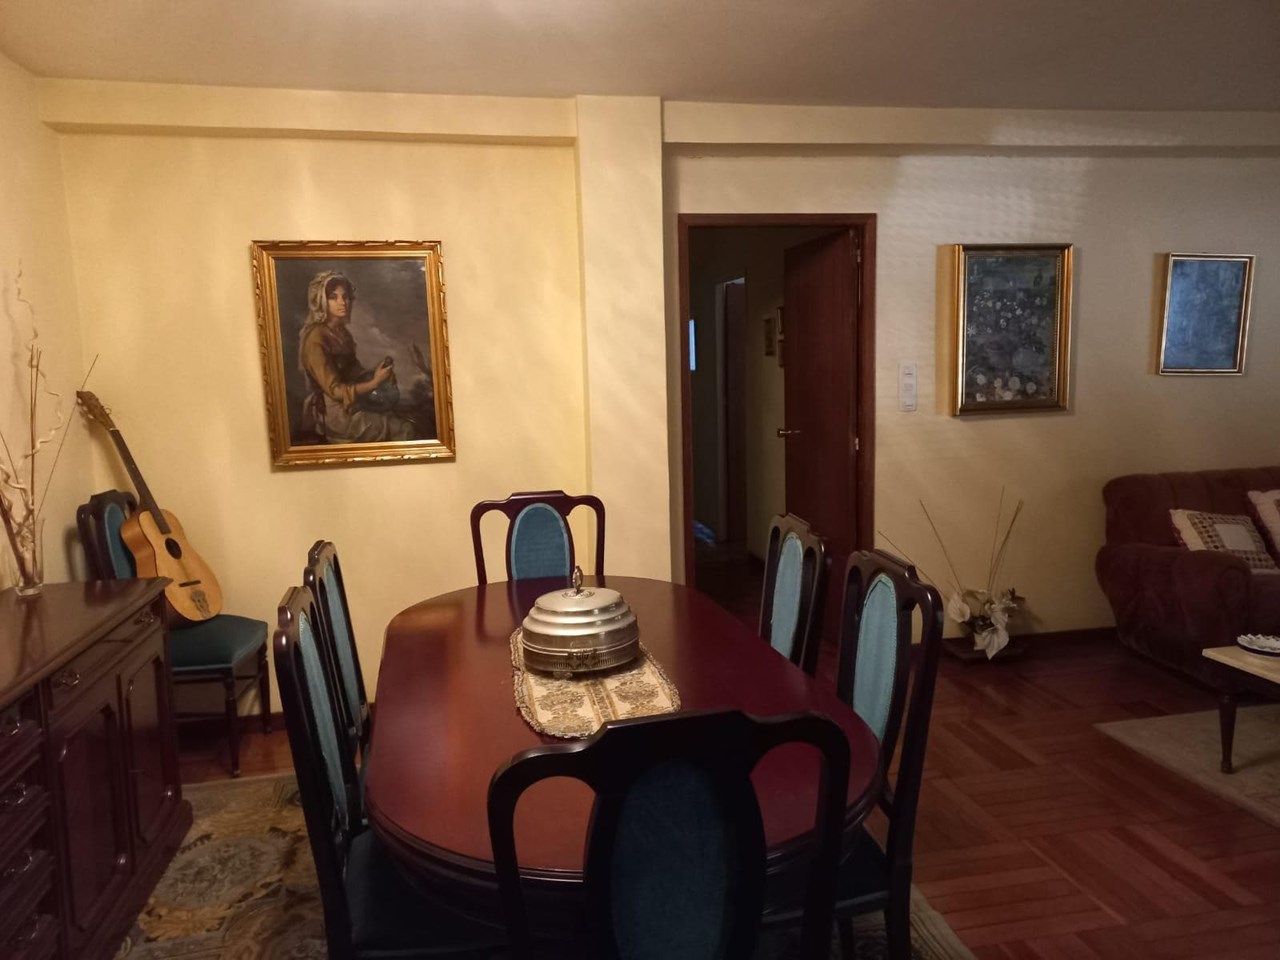 Foto 5 Coruña, 4 dormitorios + 1 dormitorio, despacho, 2 baños + aseo